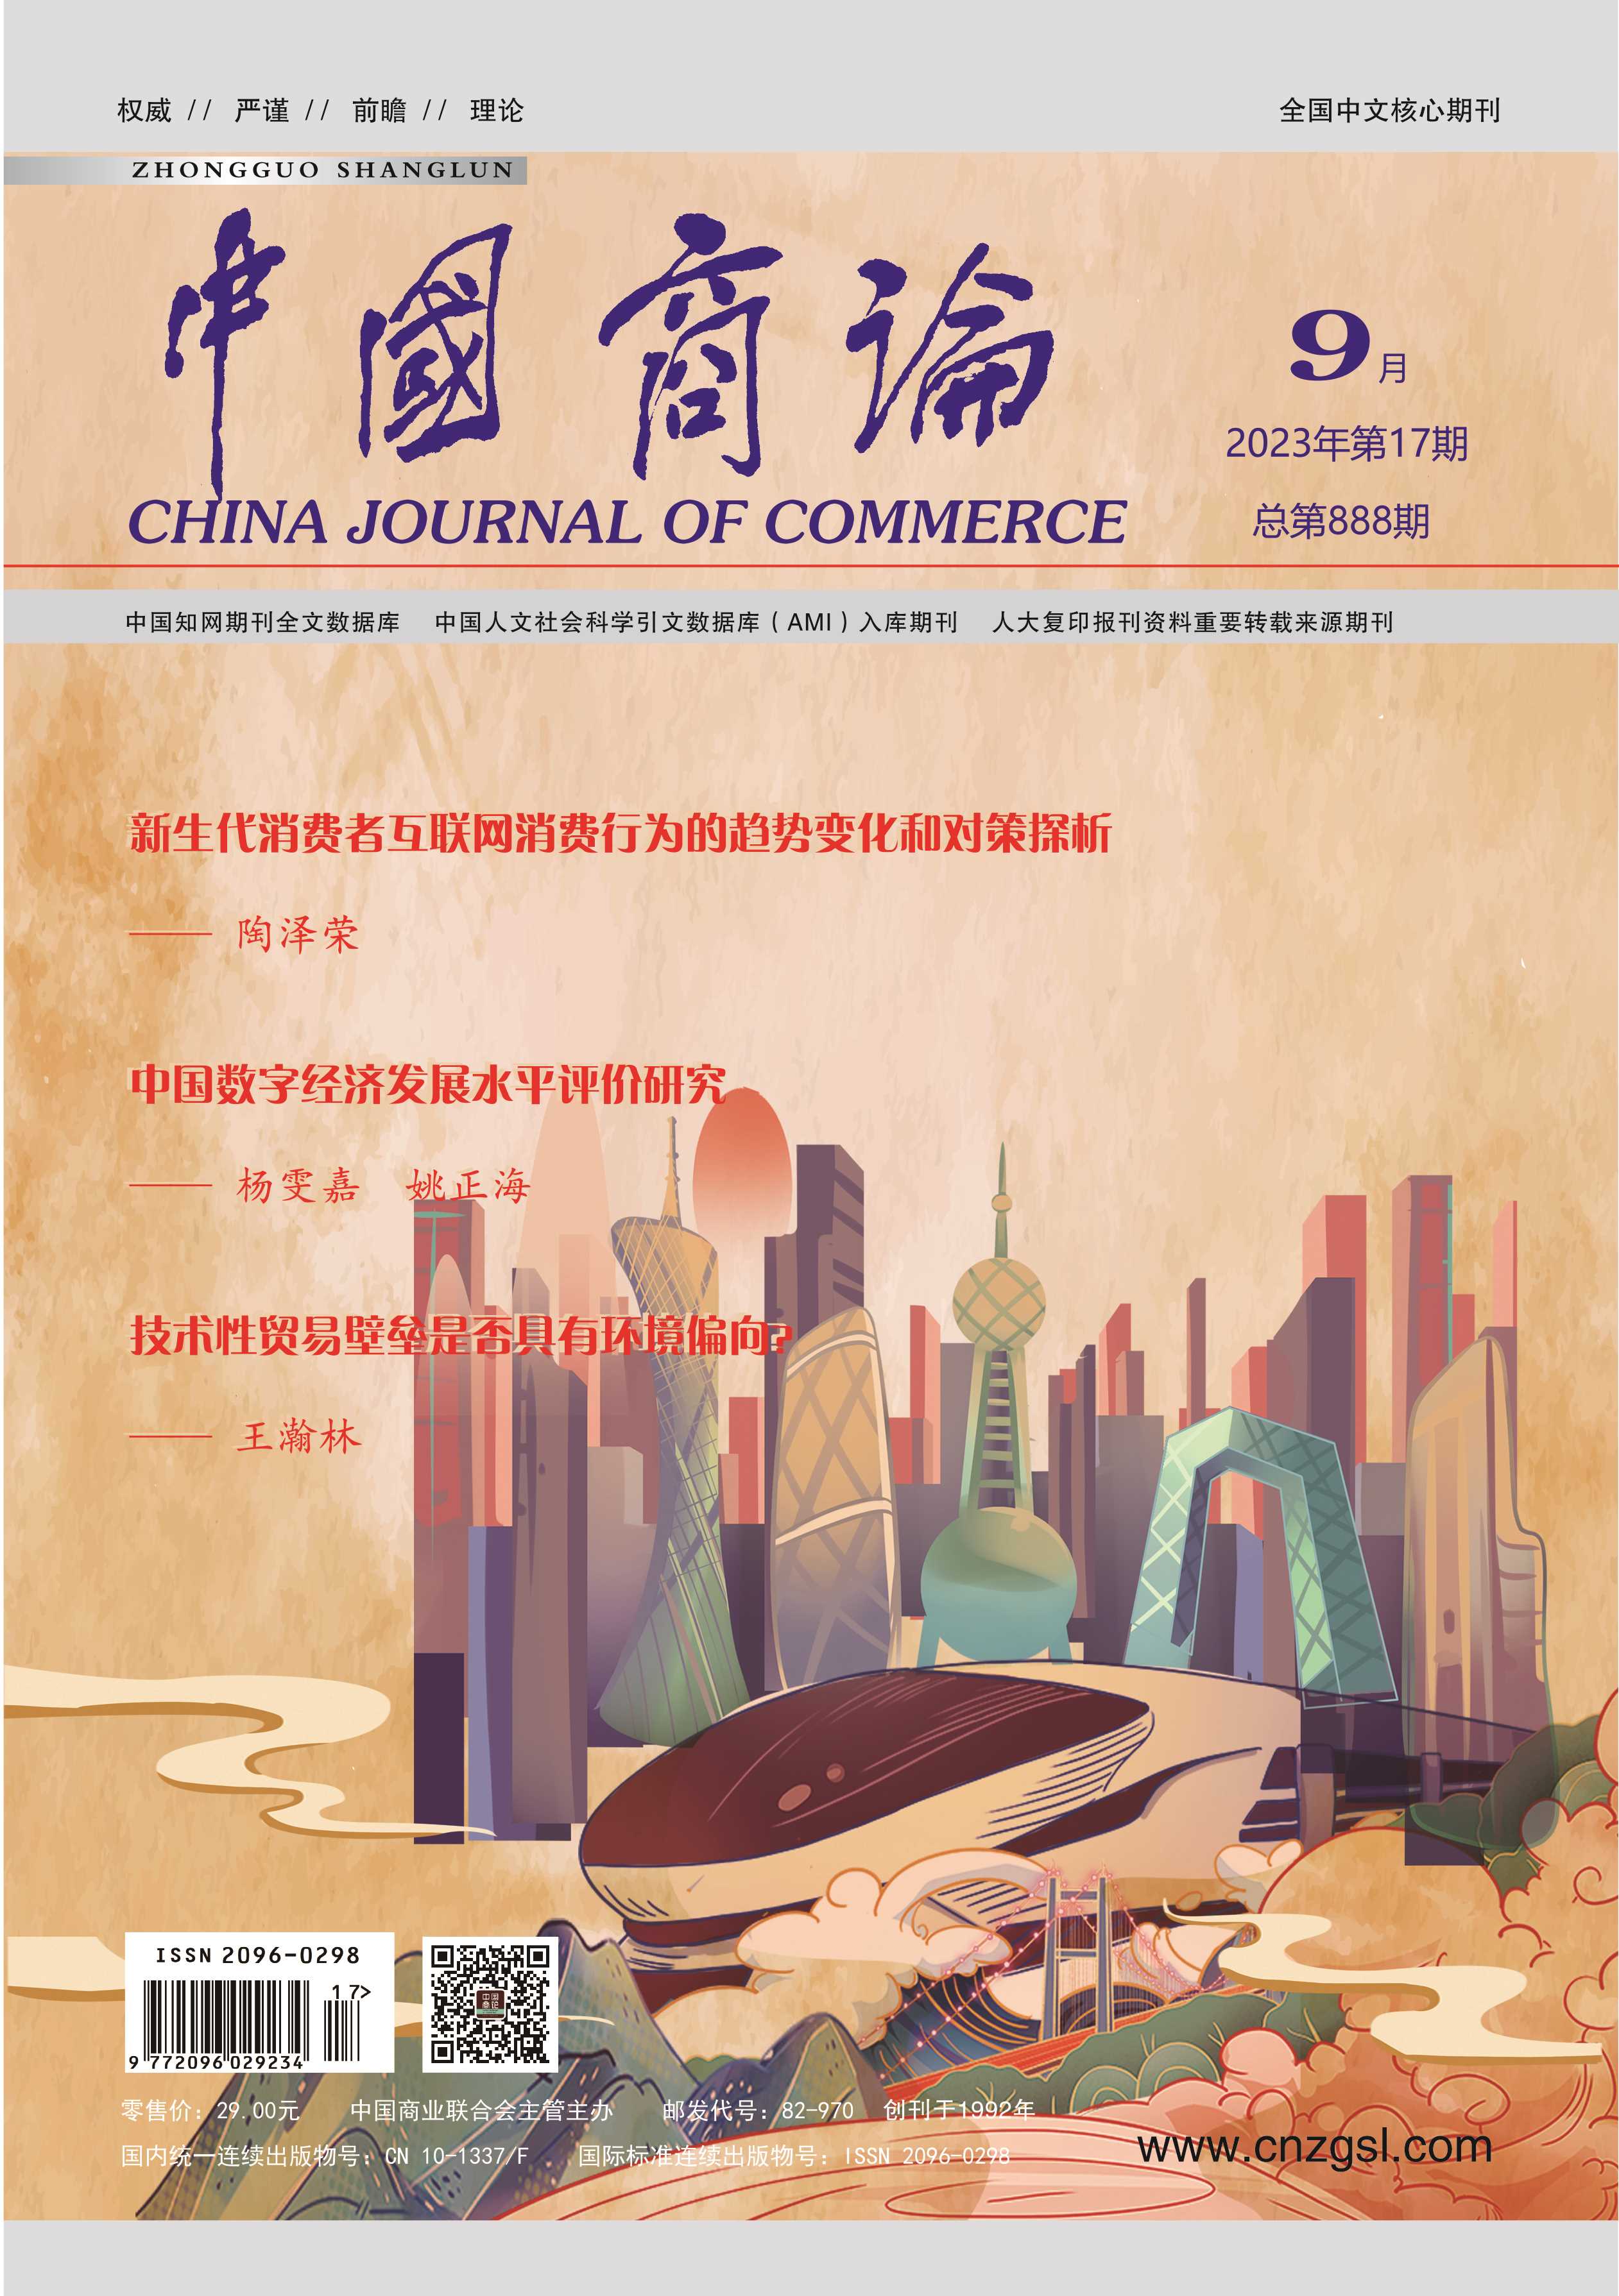 过刊展示-《中国商论》杂志